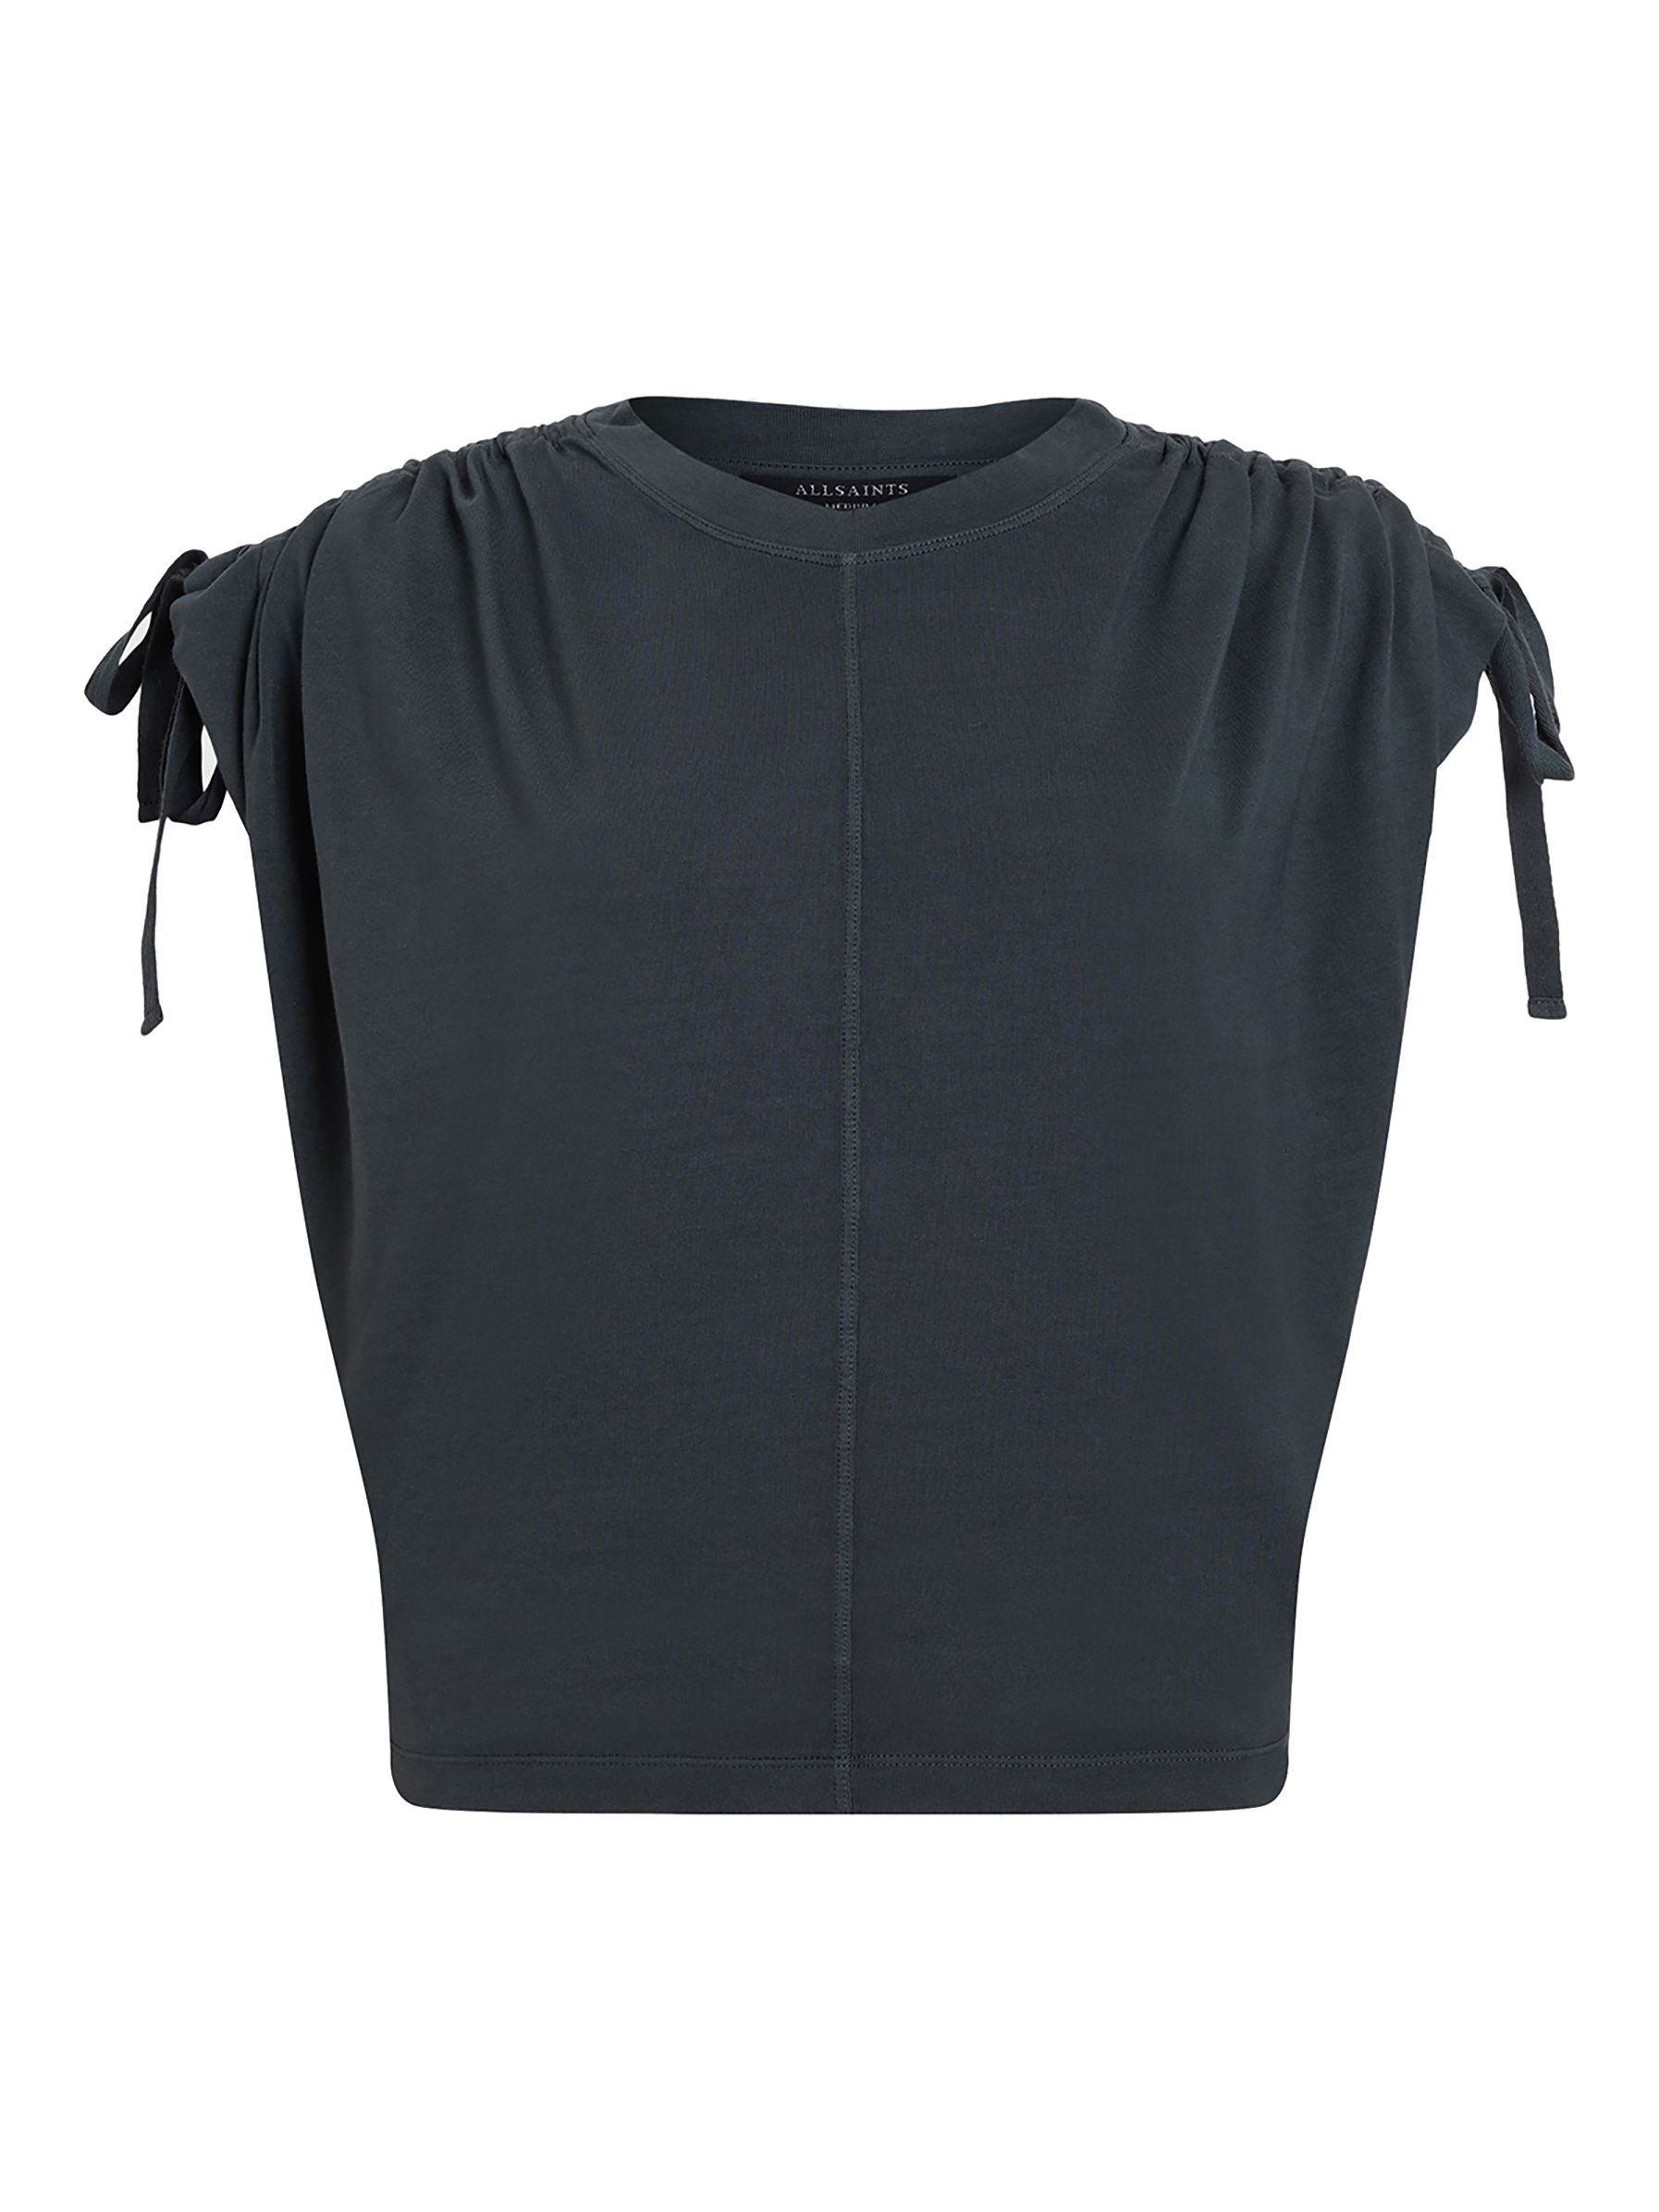 AllSaints Cassie Organic Cotton T-Shirt, Washed Black, L